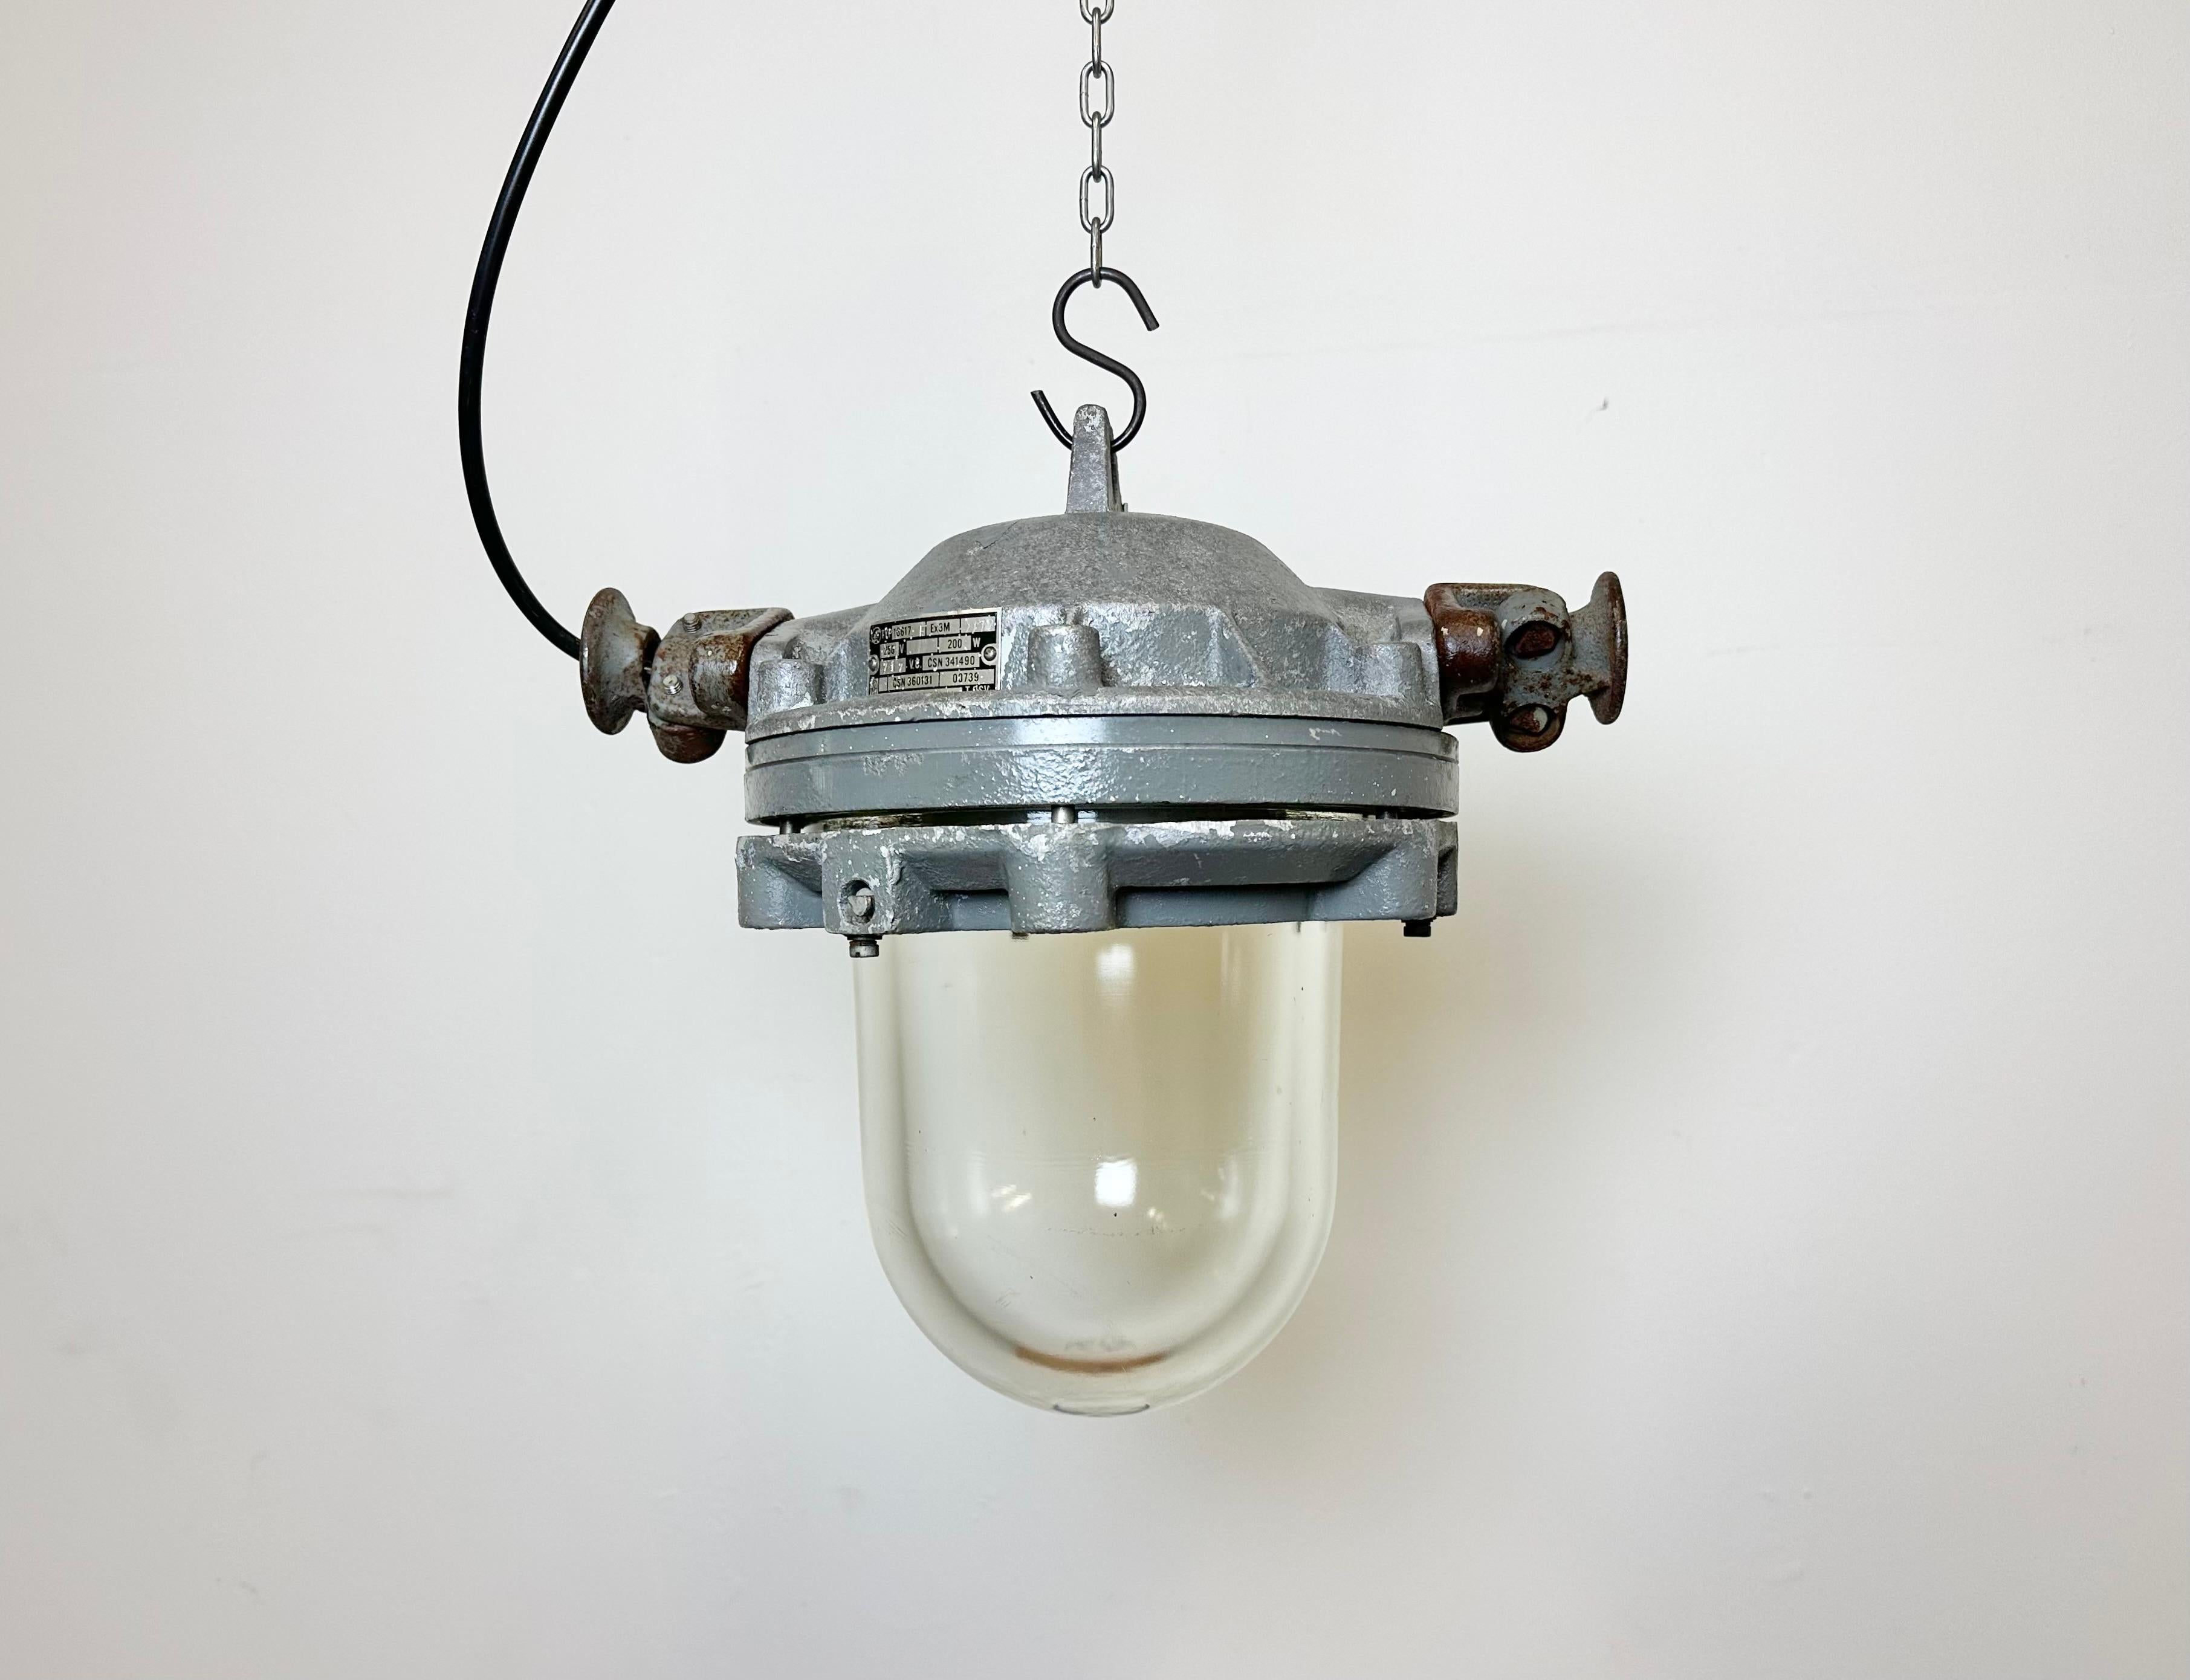 Dunkelgraue Industrielampe mit massivem Schutzglaskolben, hergestellt von Elektrosvit in der ehemaligen Tschechoslowakei in den 1970er Jahren, mit einem Gehäuse aus Aluminiumguss und einer explosionssicheren Klarglasabdeckung. Für die